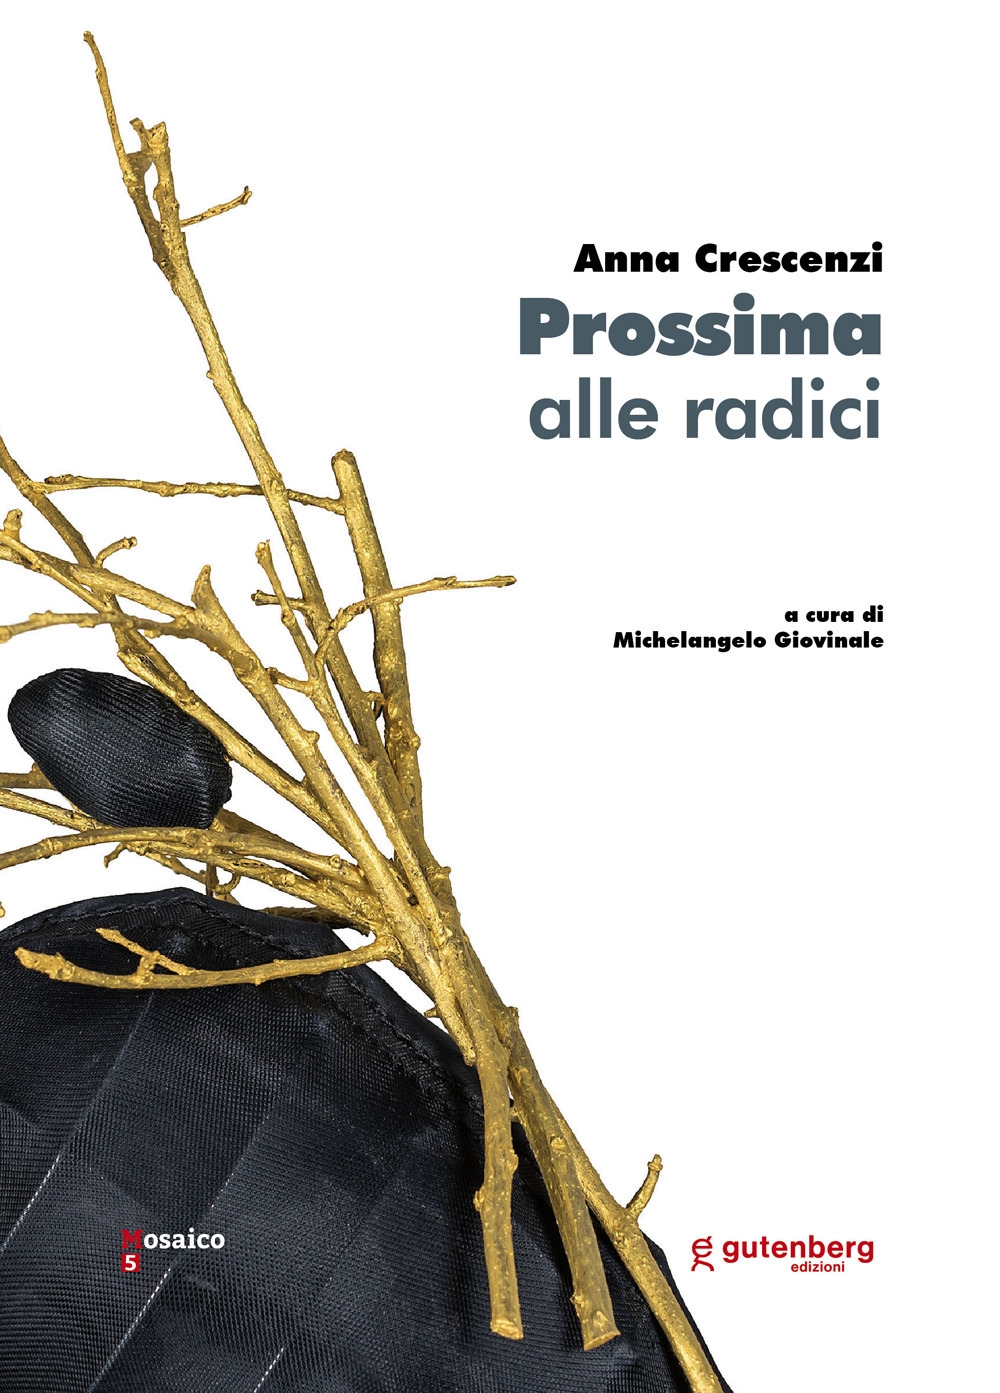 Libri Anna Crescenzi. Prossima Alle Radici NUOVO SIGILLATO, EDIZIONE DEL 01/09/2020 SUBITO DISPONIBILE